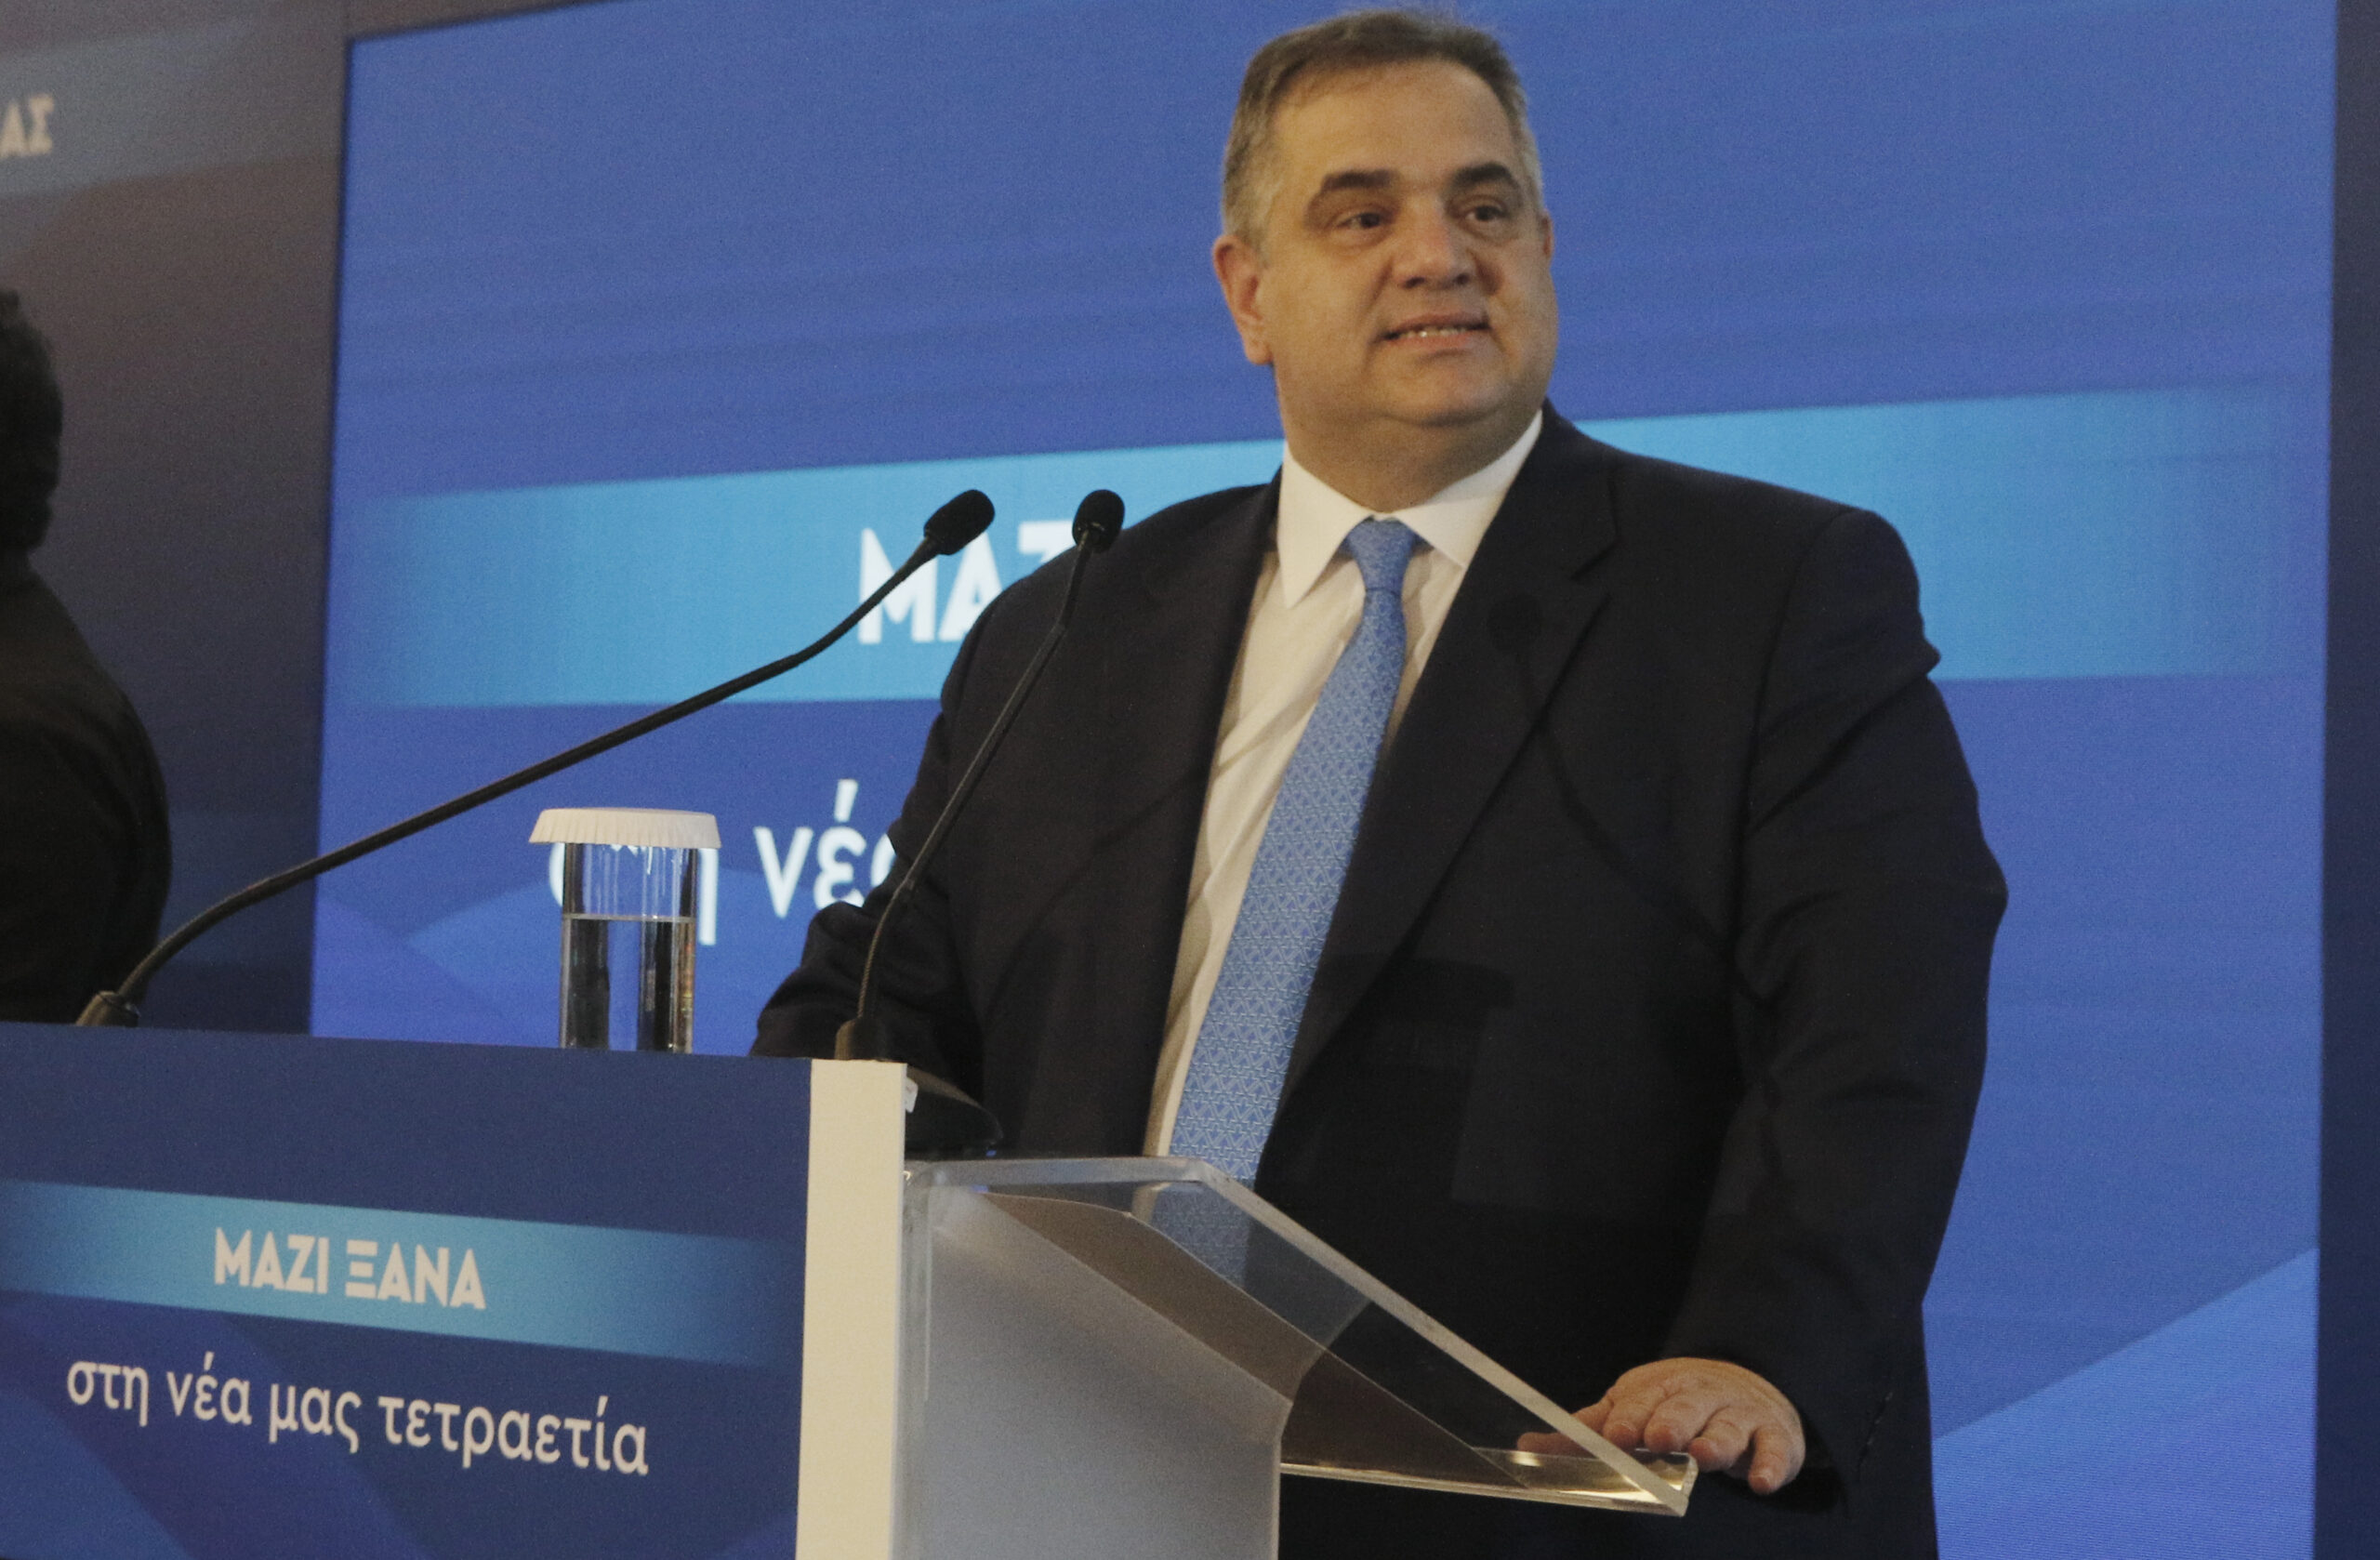 Βασίλης Σπανάκης: Ποιος είναι ο νέος υφυπουργός Εργασίας και Κοινωνικής Ασφάλισης